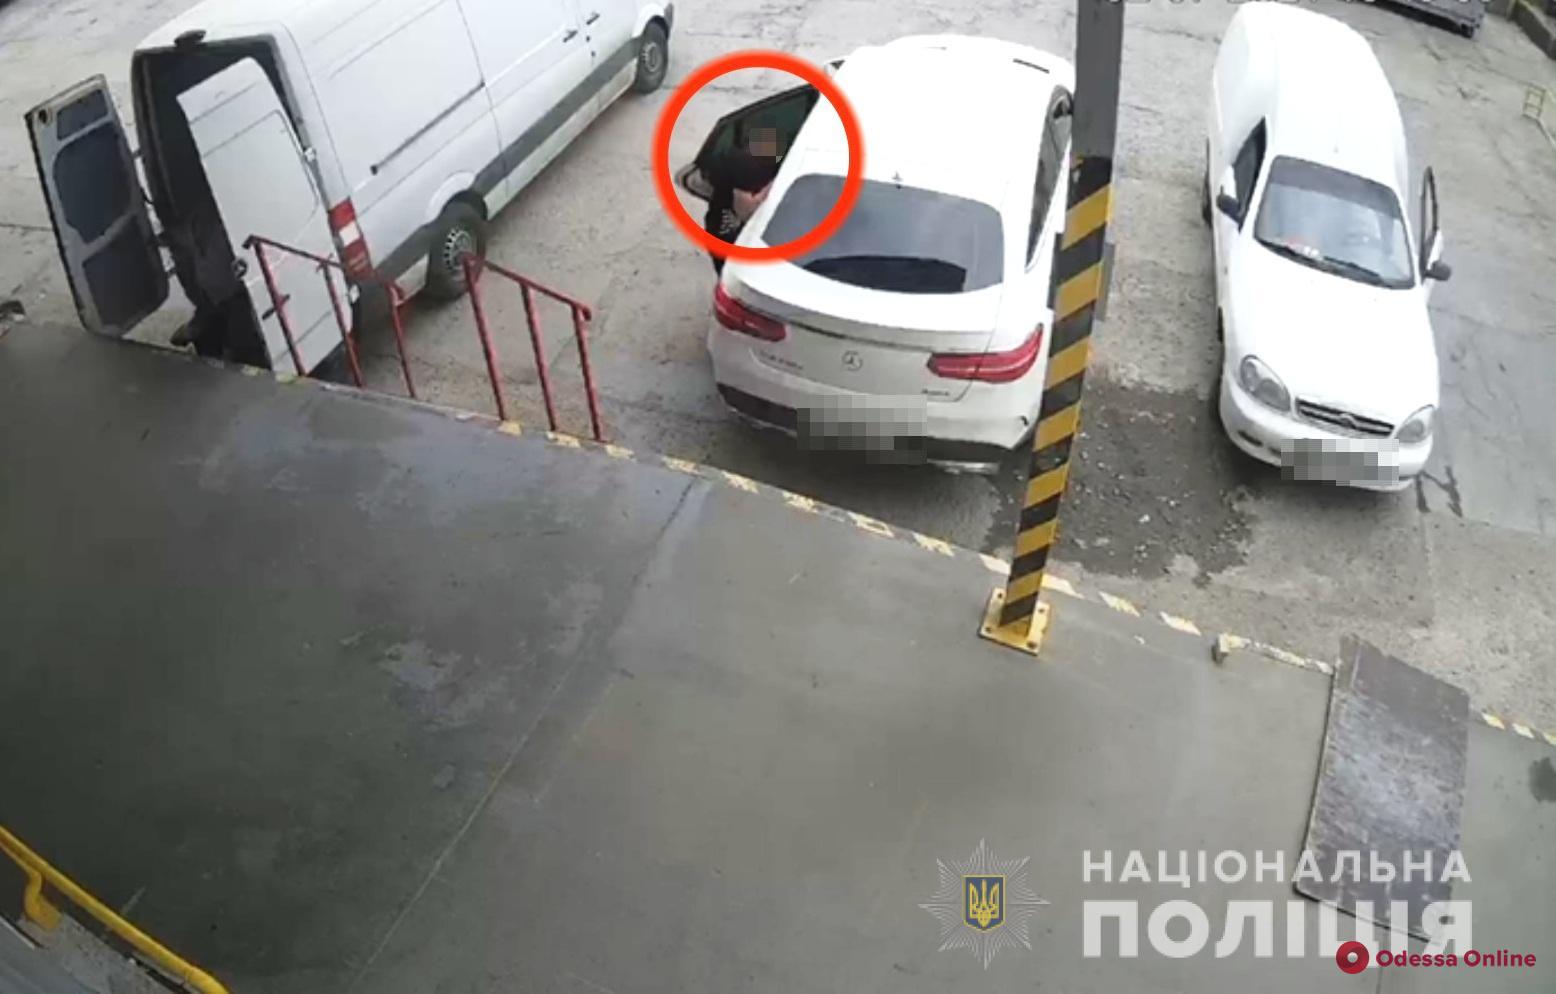 На Киевском шоссе трое гастролеров украли из машины одессита 300 тысяч